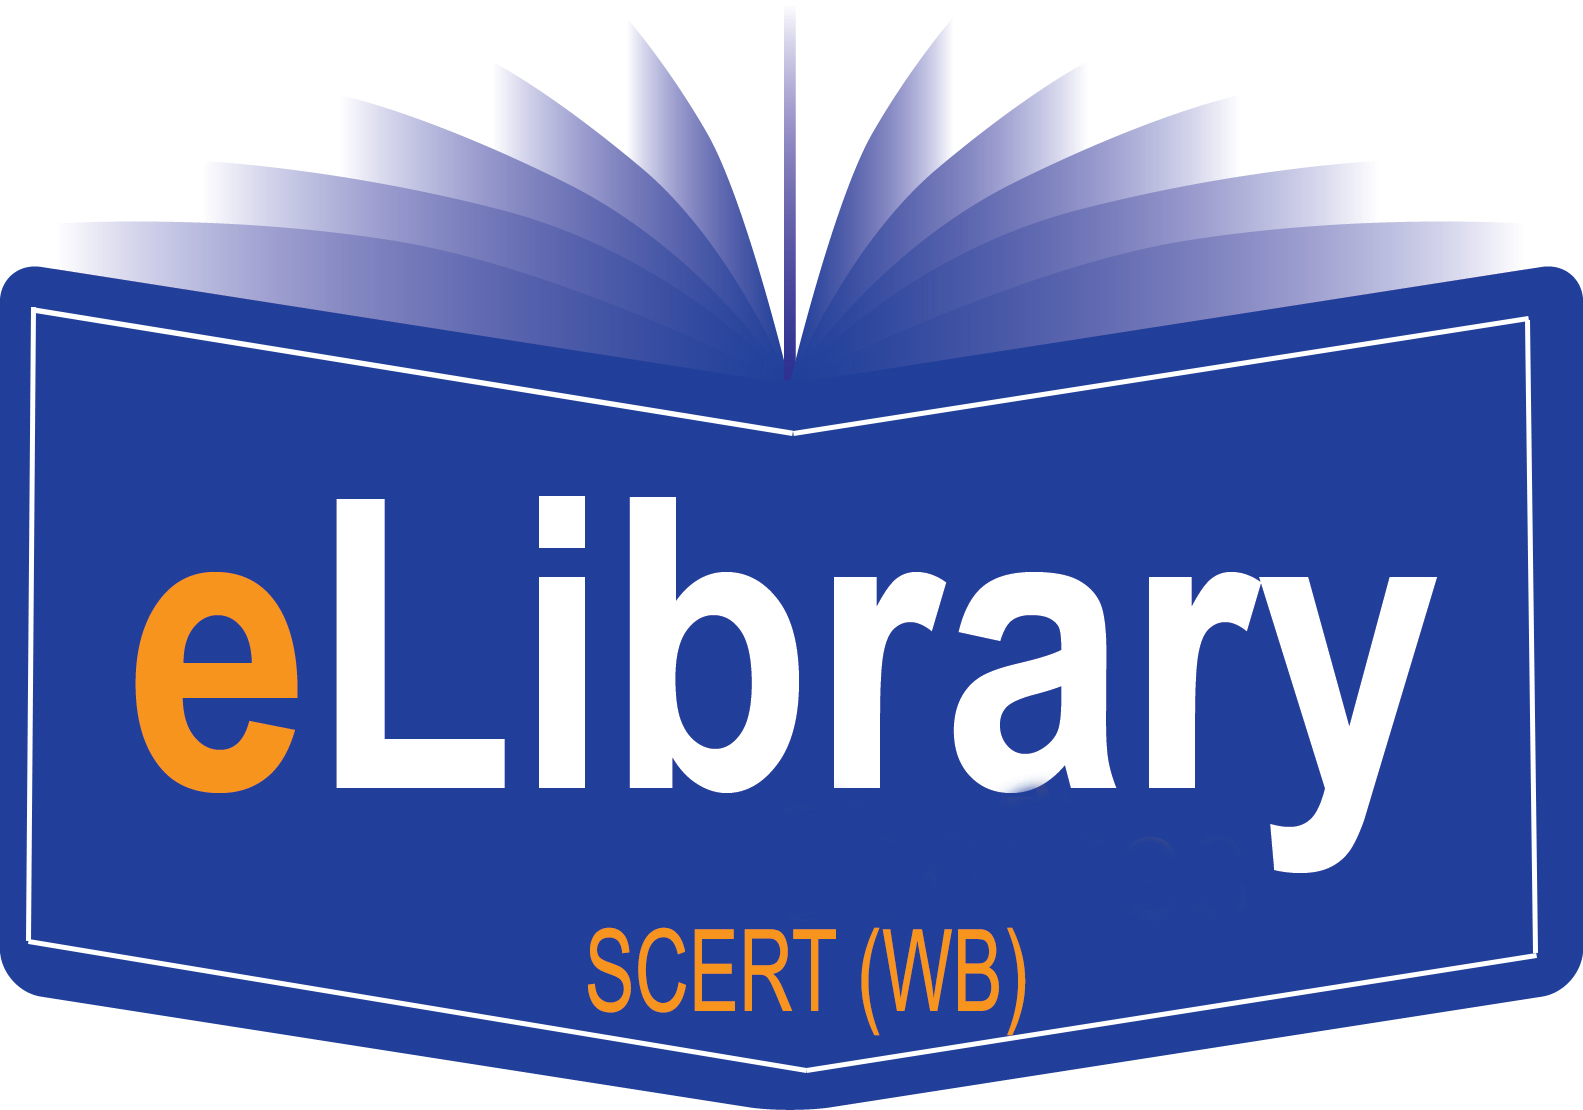 SCERT logo